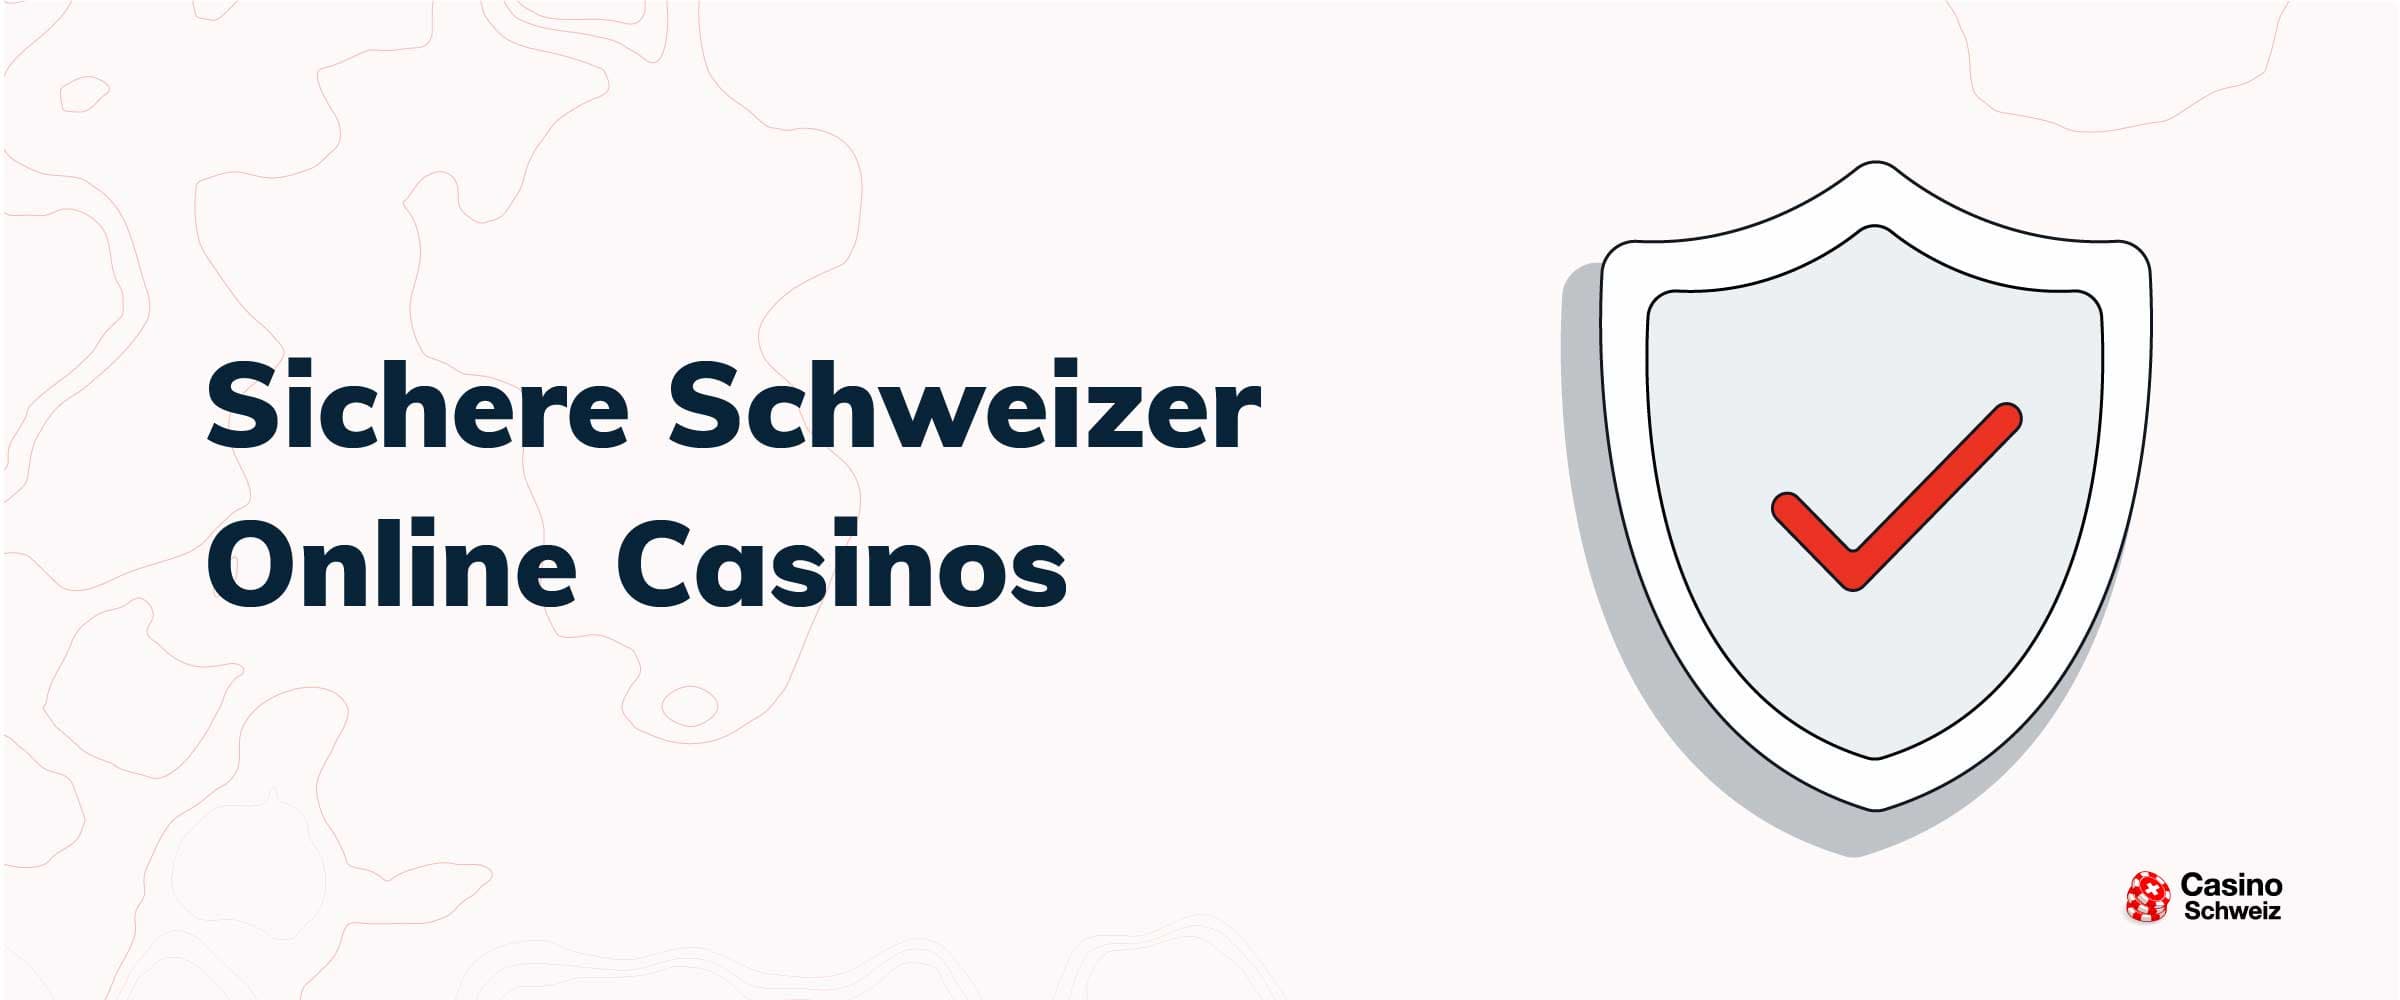 Sichere Schweizer Online Casinos